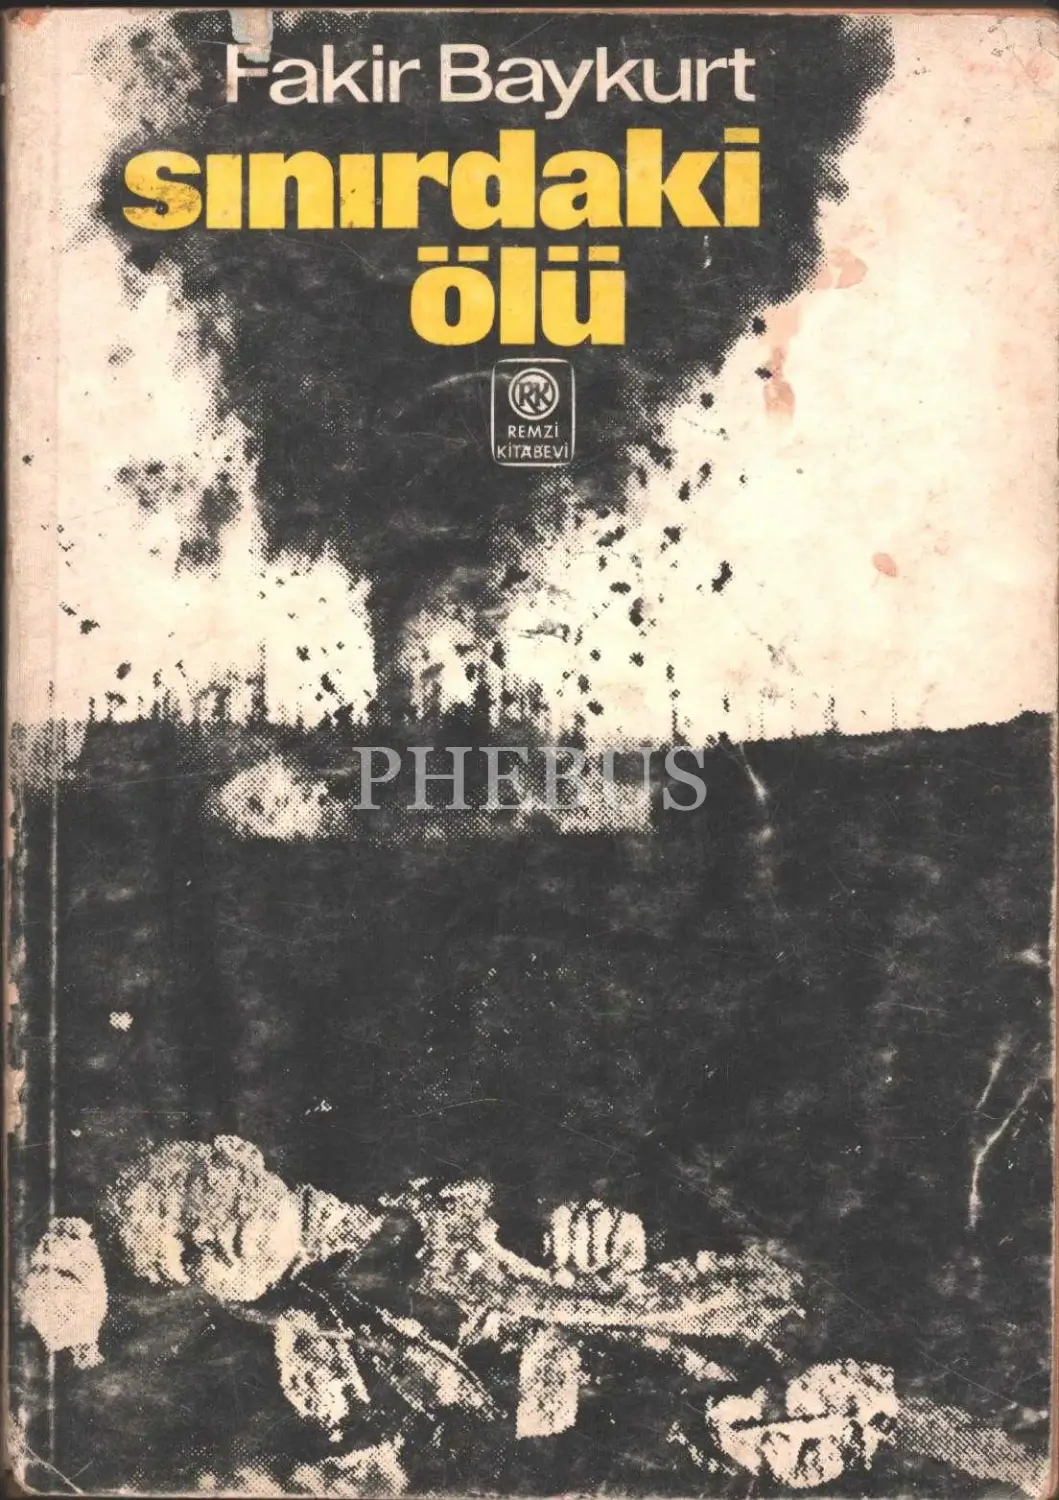 SINIRDAKİ ÖLÜ, Fakir Baykurt, İstanbul 1976, Remzi Kitabevi, 303 sayfa, 14x20 cm, İTHAFLI VE İMZALI...